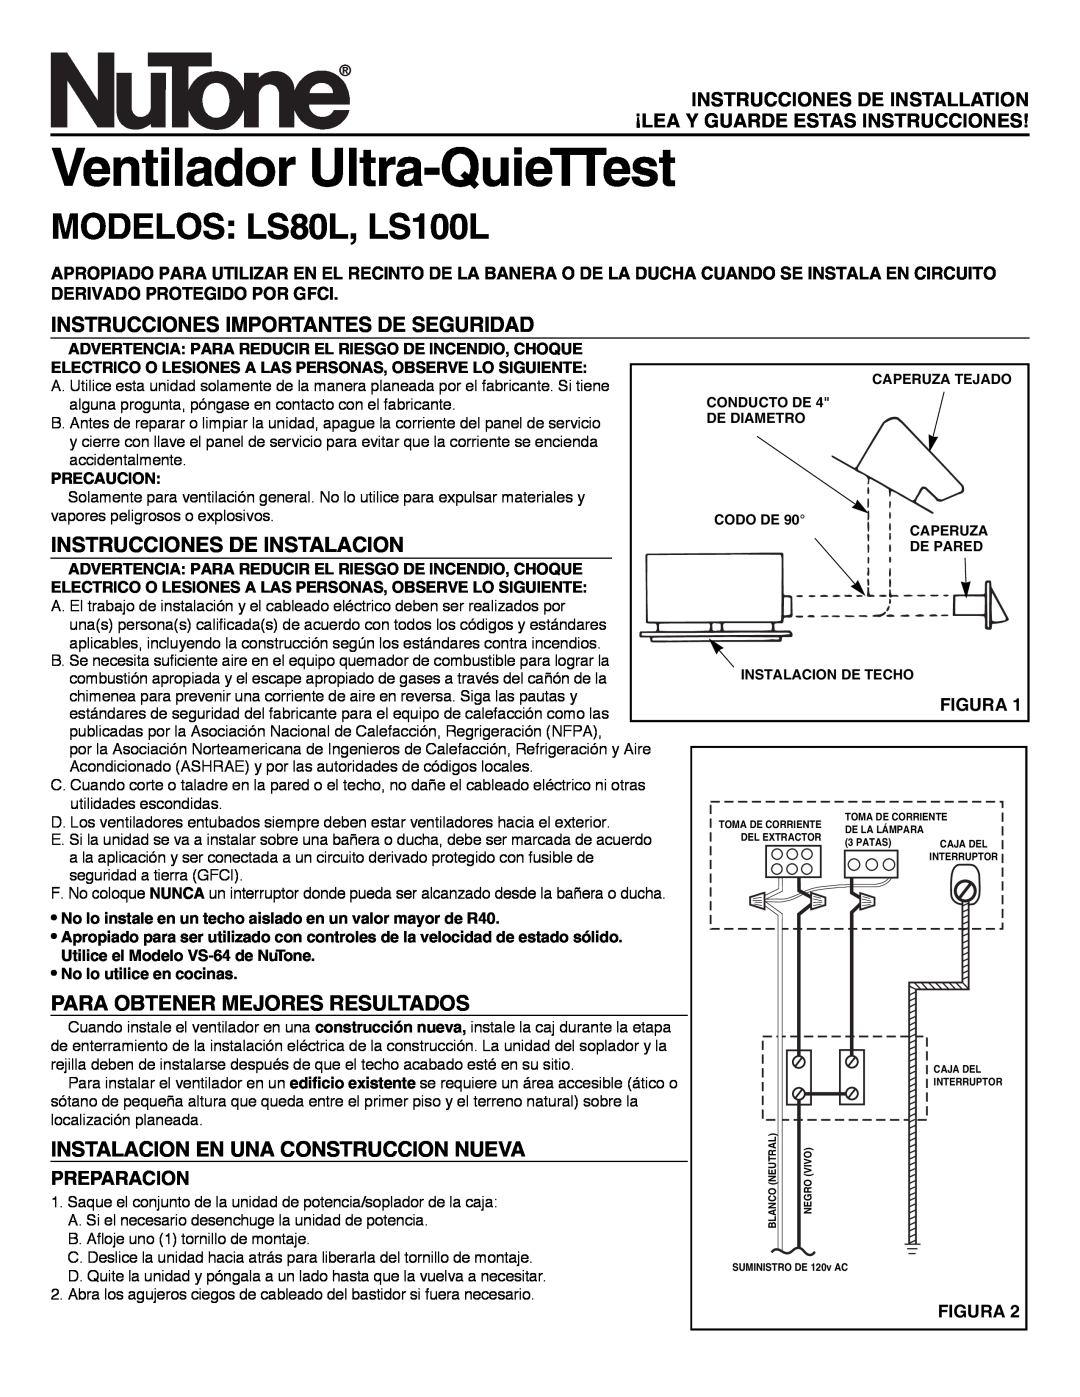 NuTone Ventilador Ultra-QuieTTest, MODELOS LS80L, LS100L, Instrucciones Importantes De Seguridad, Preparacion, Figura 